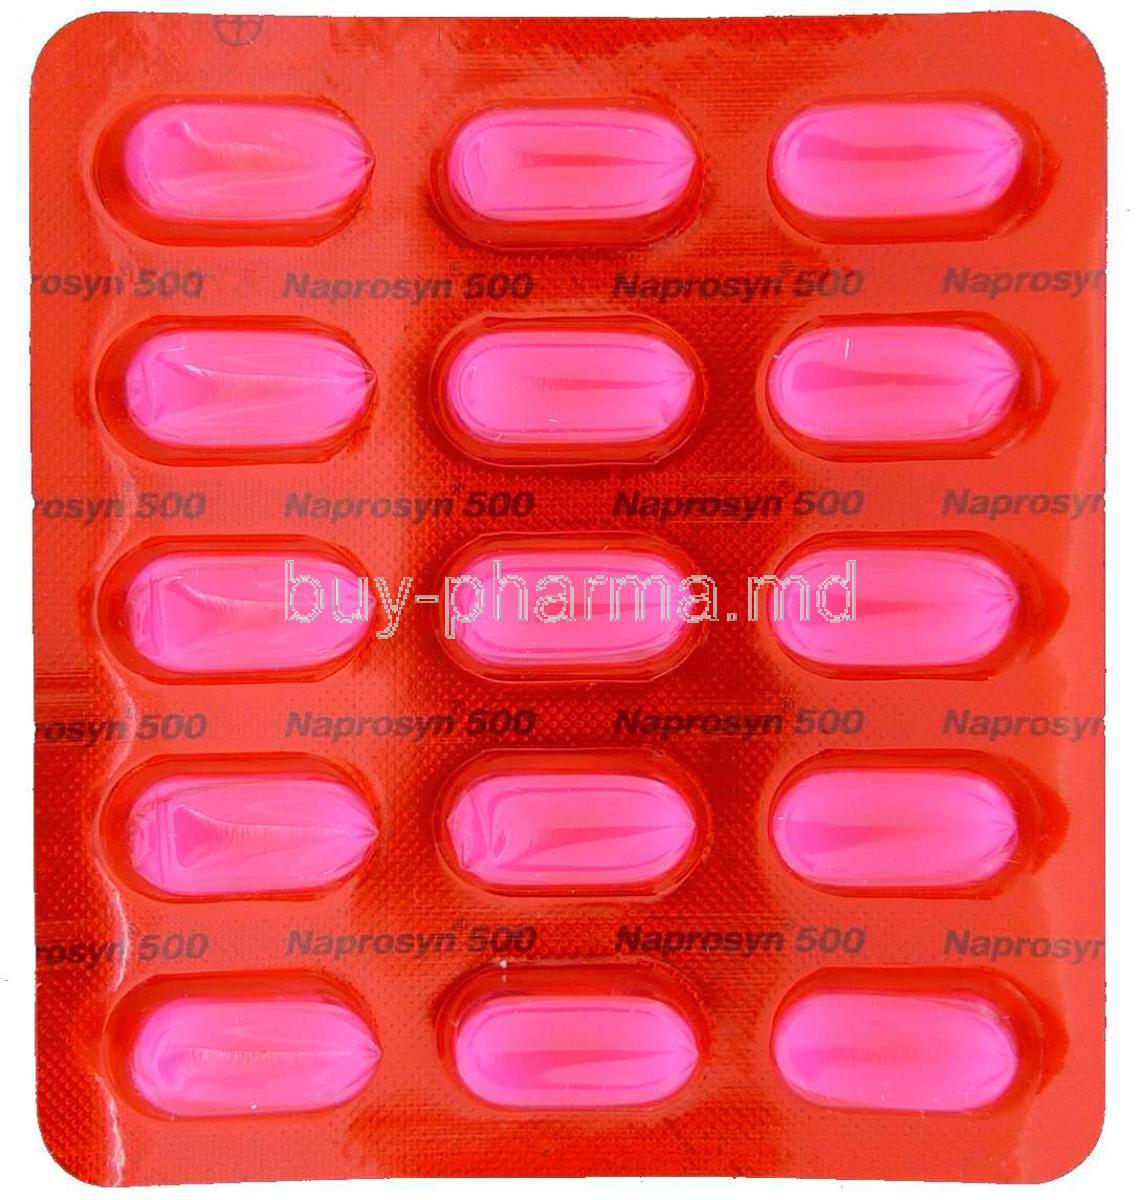 Promethazine pills price